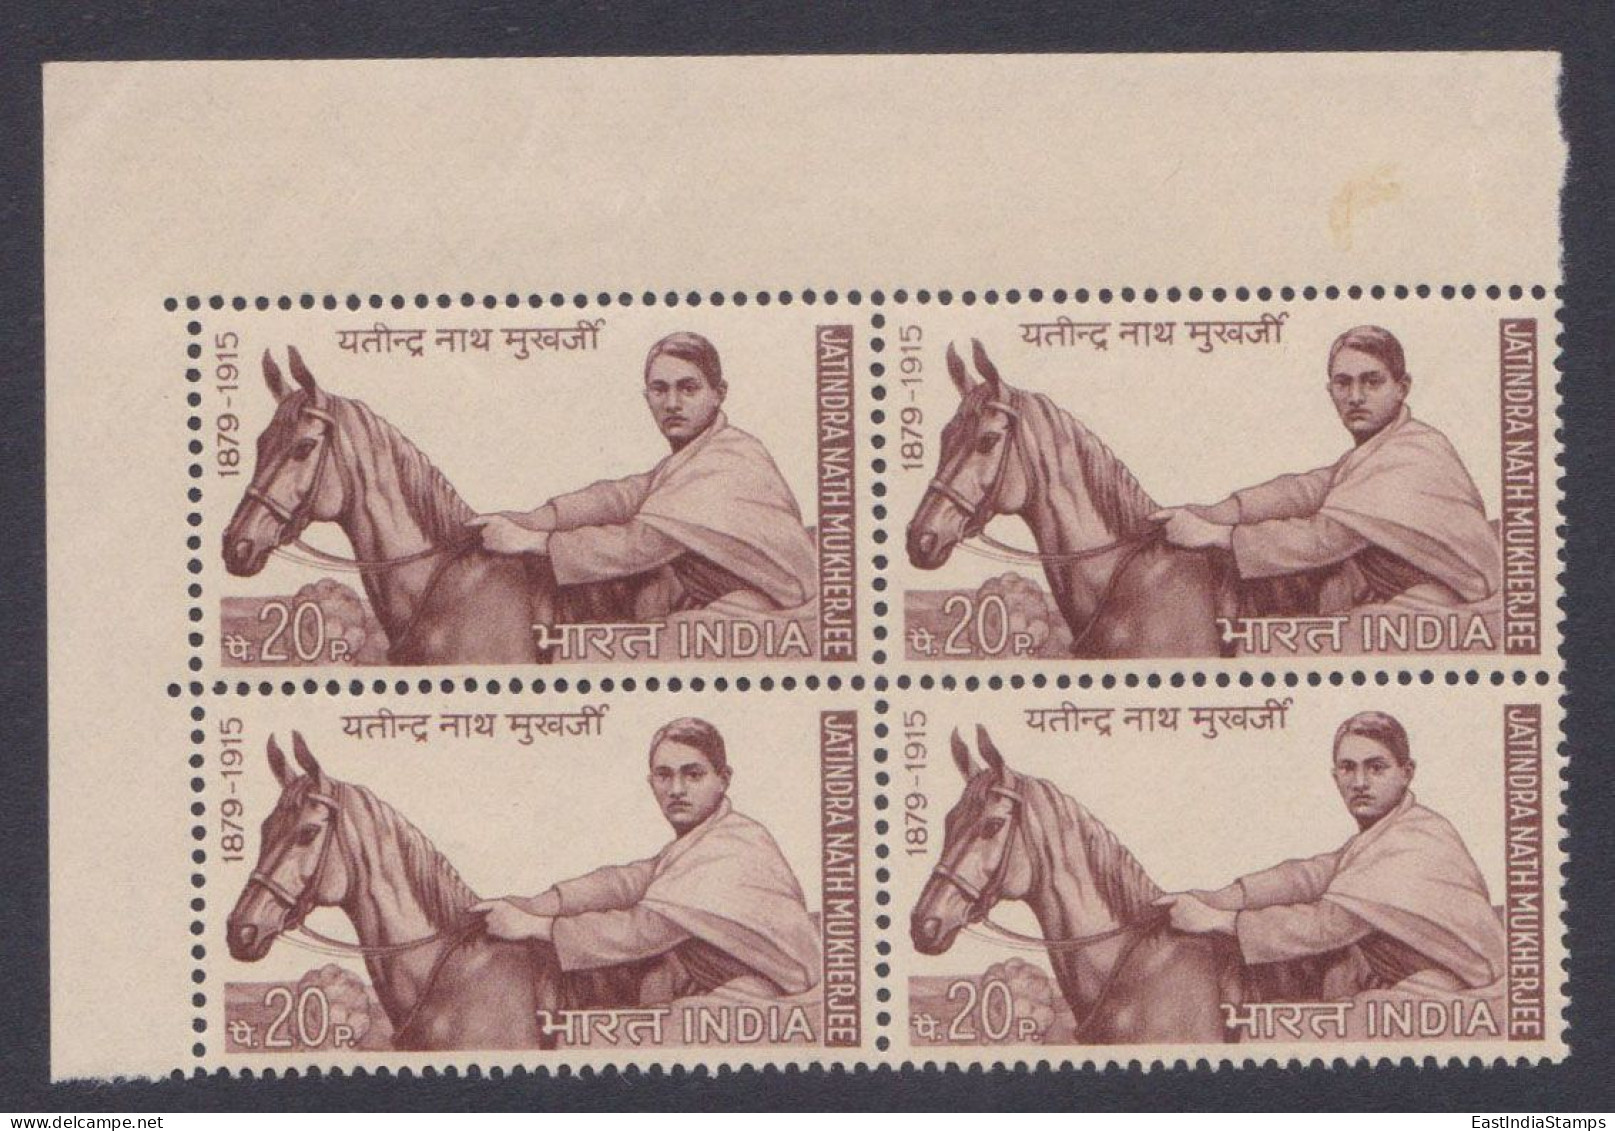 Inde India 1970 MNH Jatindra Nath Mukherjee, Bhaga Jatin, Indian Independence Activist, Horse, Horses, Block - Nuovi